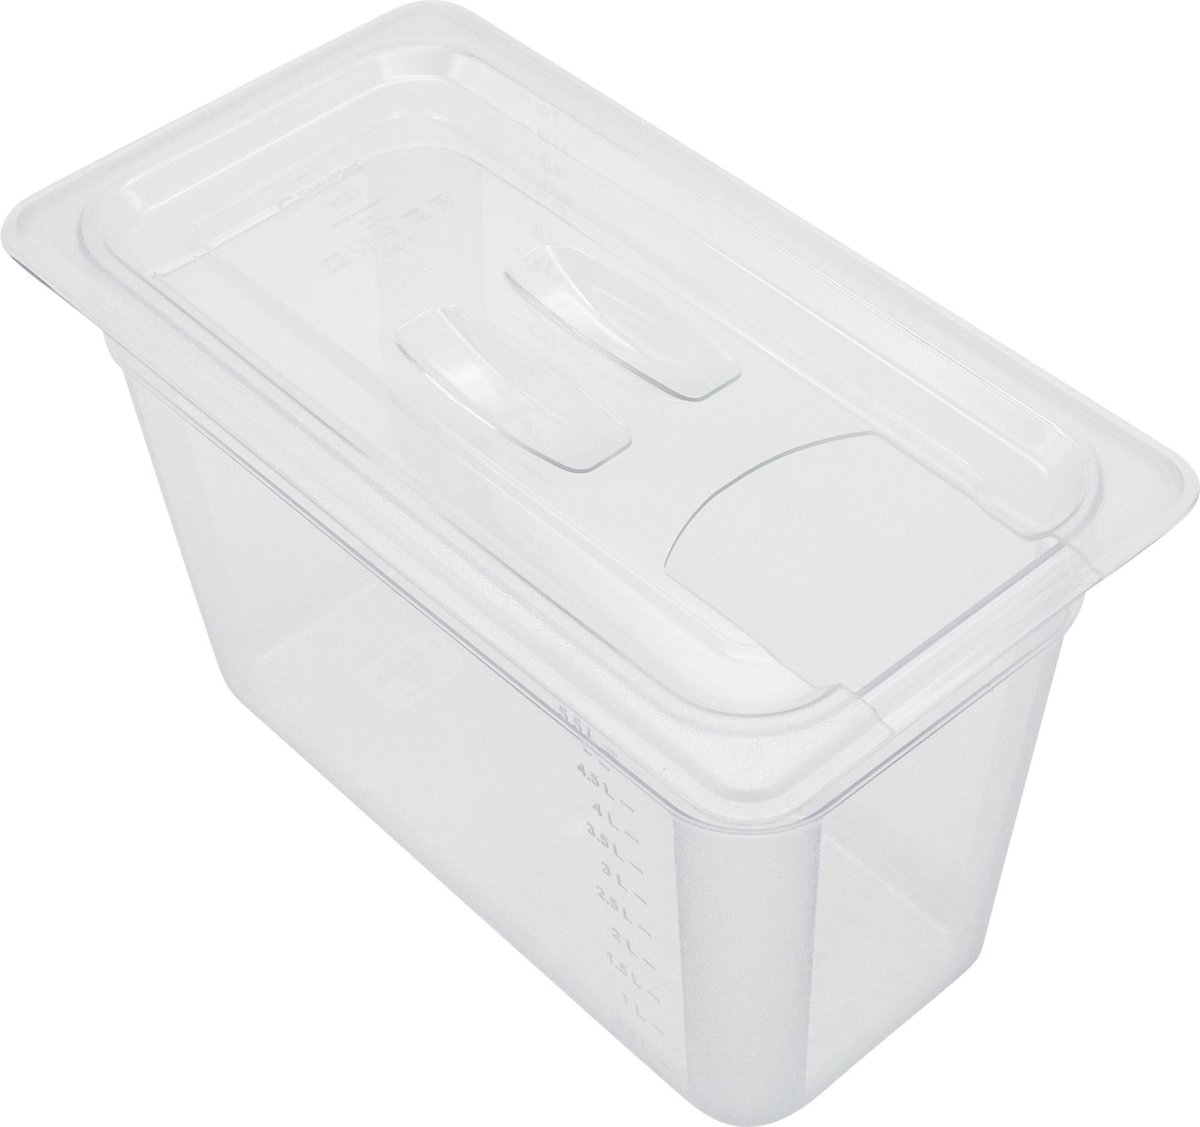 Ziva Small sous-vide waterbak 7 liter (Polycarbonaat) + deksel met uitsparing voor sous-vide sticks - Ziva